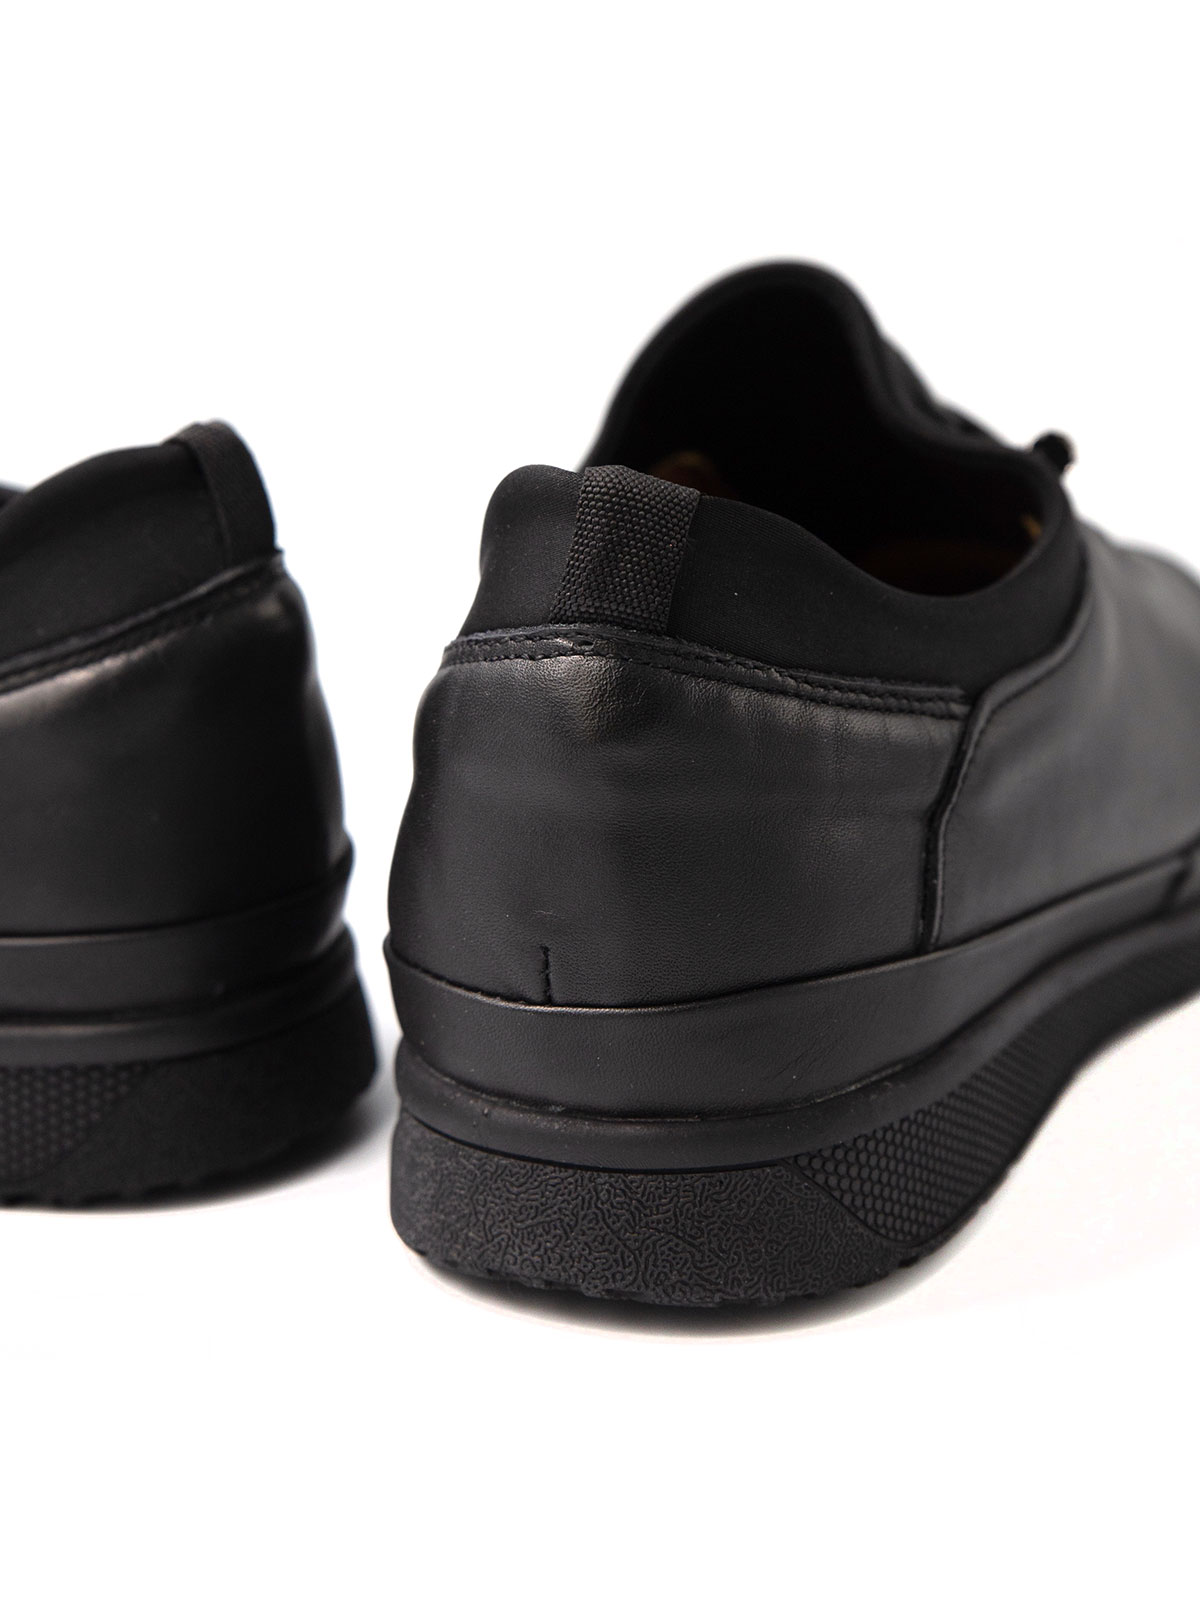 Μαύρα δερμάτινα παπούτσια με ελαστικά κο - 81095 - € 41.62 img4